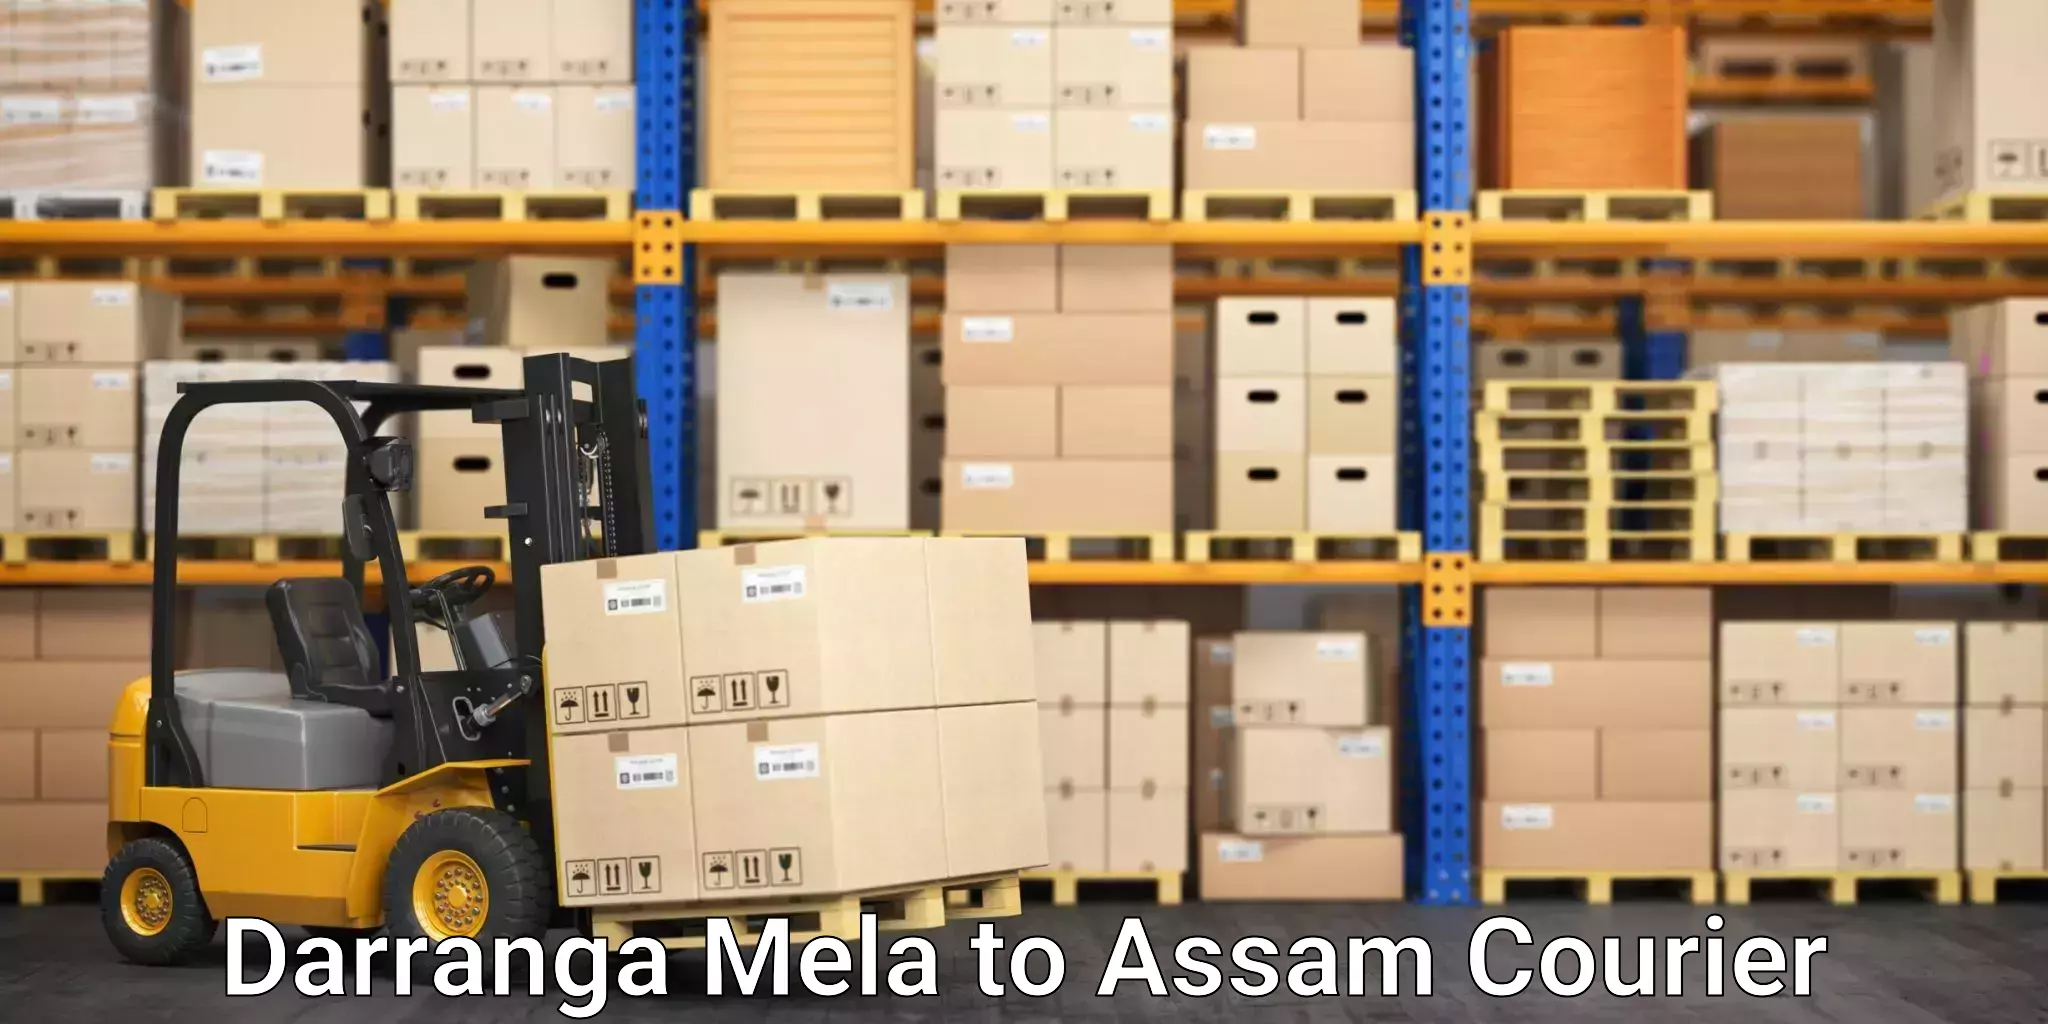 Advanced shipping technology Darranga Mela to Doom Dooma